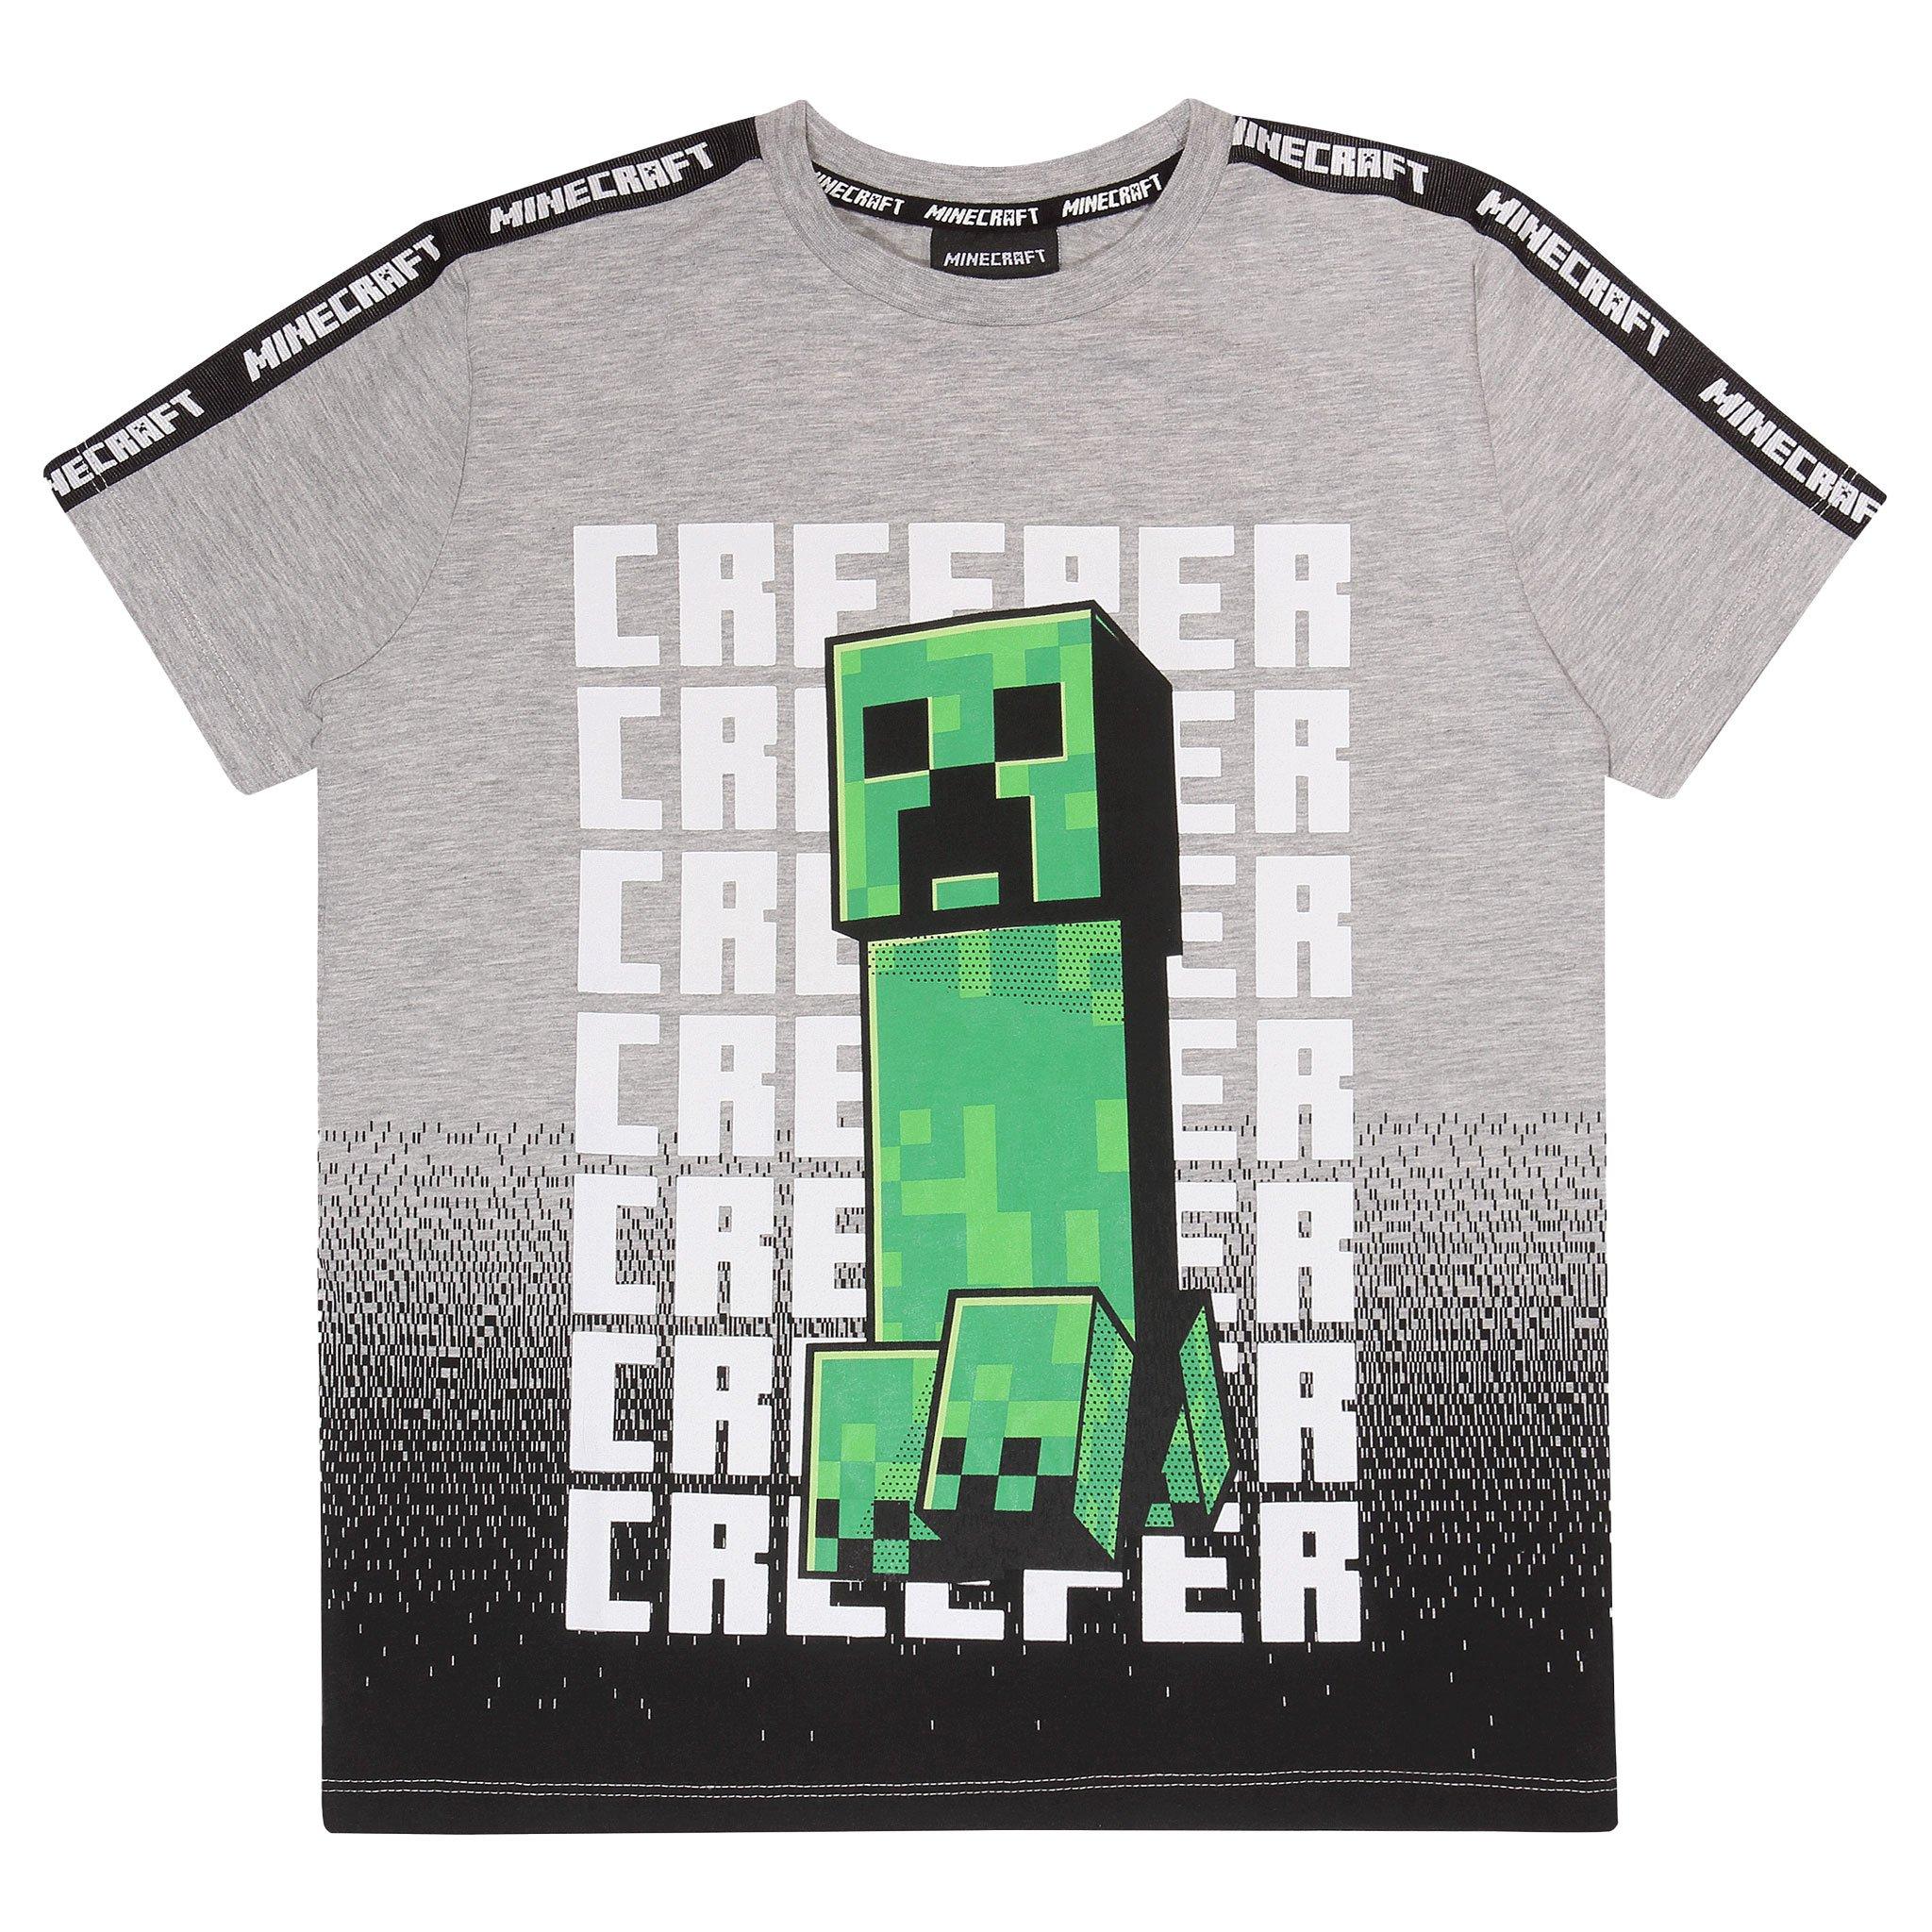 Creeper Run Creeper T-Shirt